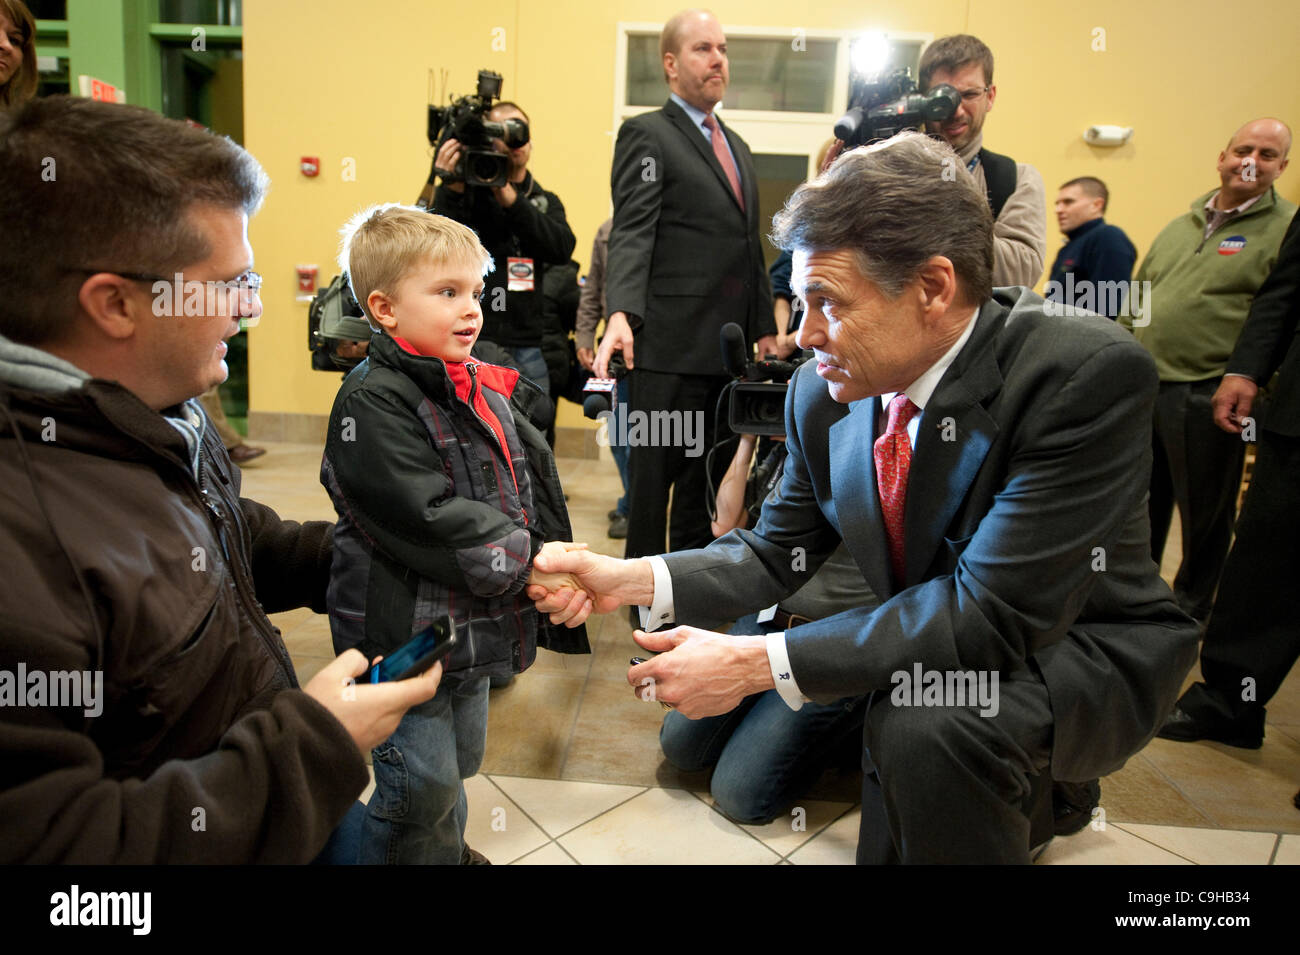 Kandidat der republikanischen Präsidentschaftskandidaten Rick Perry grüßt einen kleiner Junge vor anlässlich einer Veranstaltung Caucus in Iowa. Stockfoto